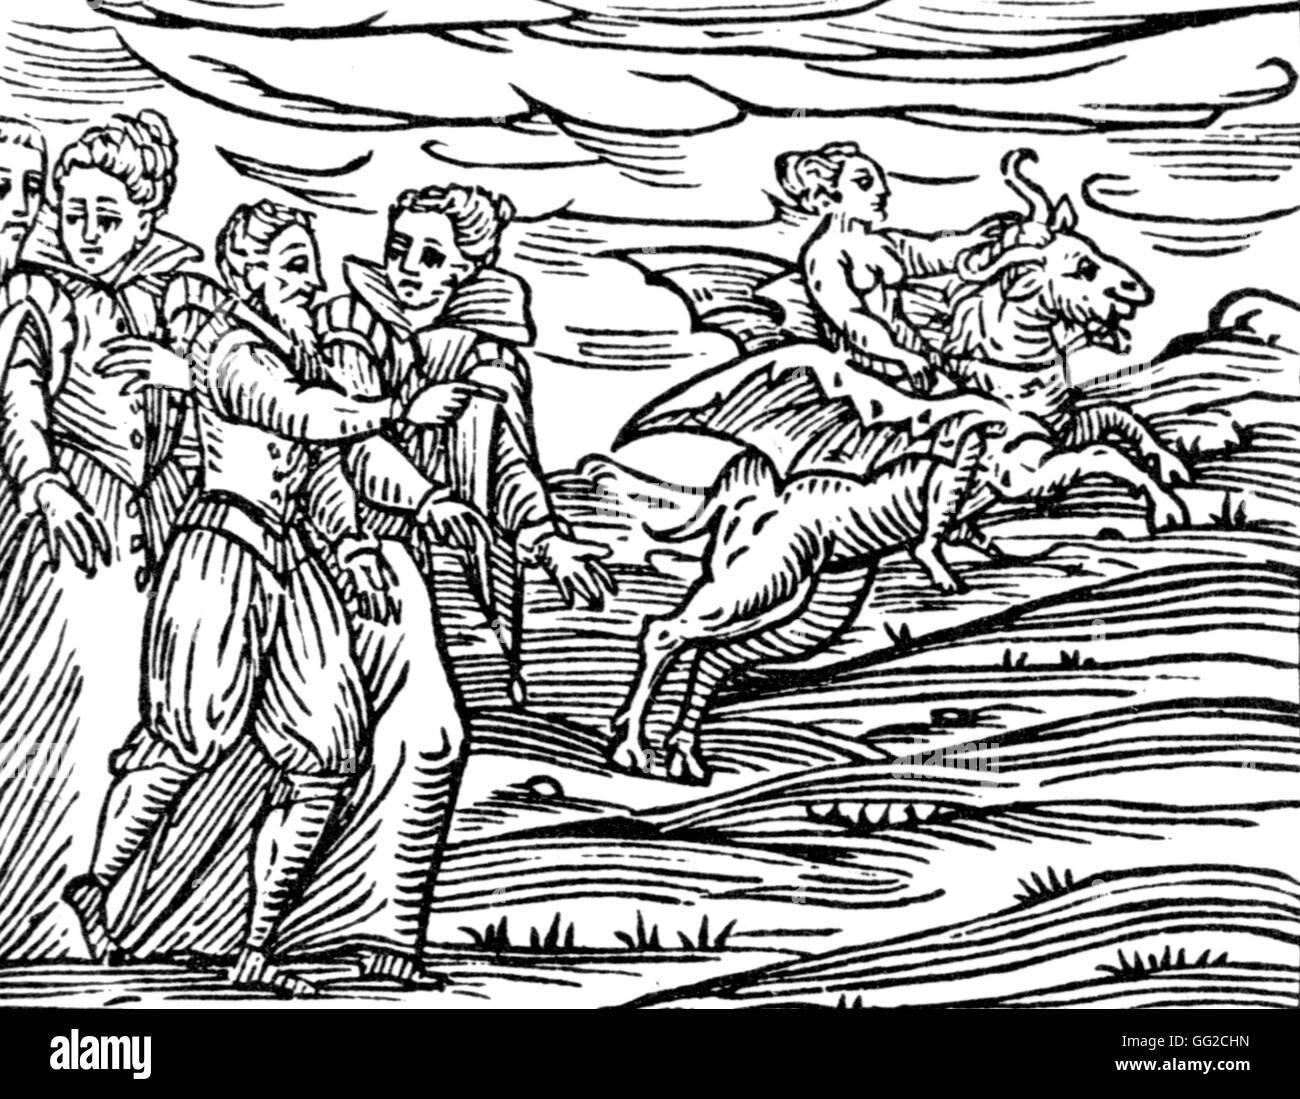 Les sorcières allant au sabbat des sorcières de la gravure sur bois 16ème siècle Banque D'Images